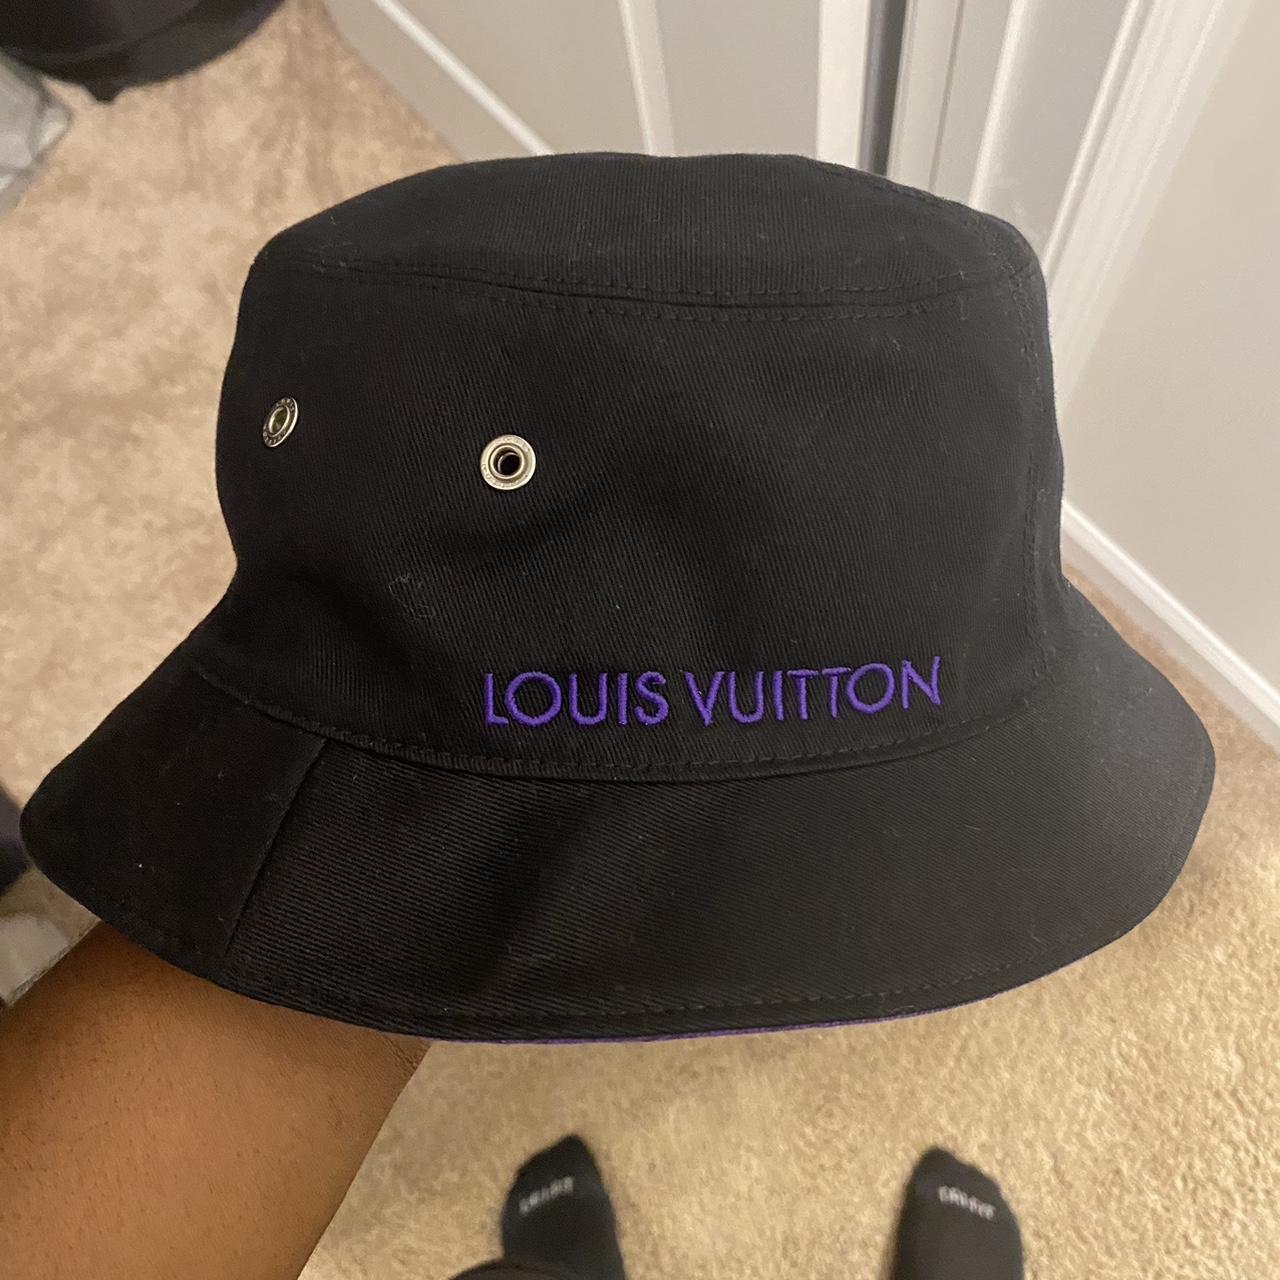 Louis vuitton-hat - Depop